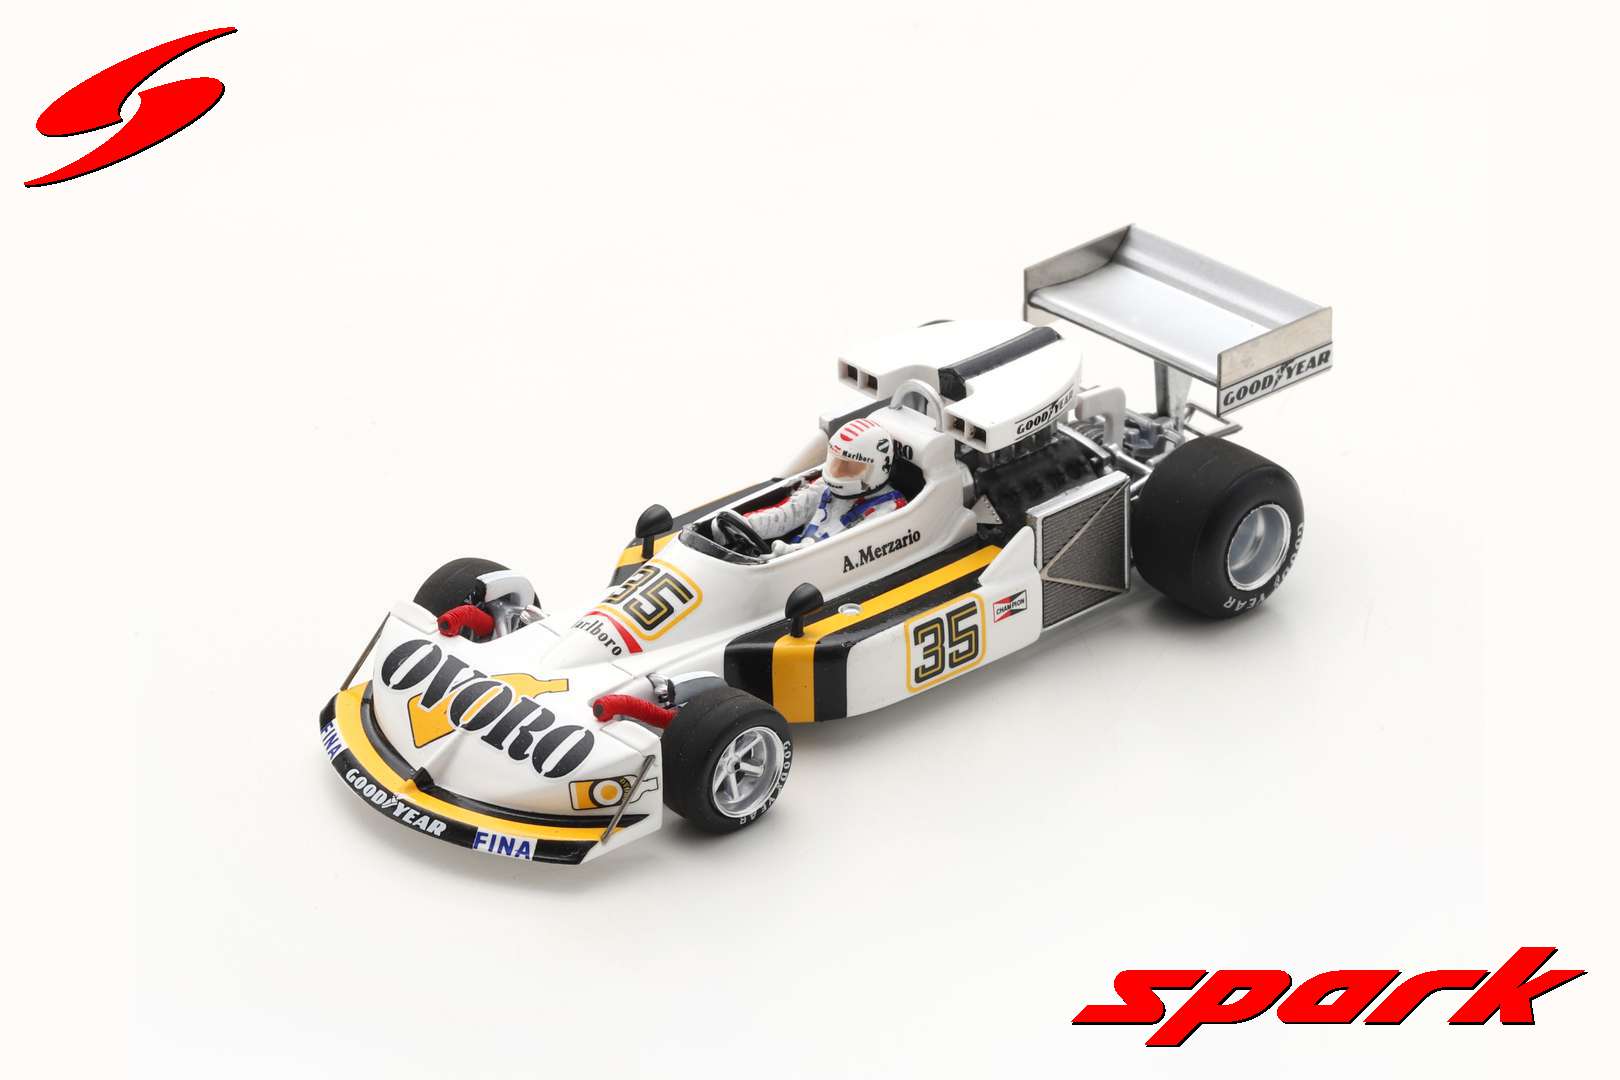 March 761 No.35 Spanish GP 1976 Arturo Merzario /Spark S7269 1:43/